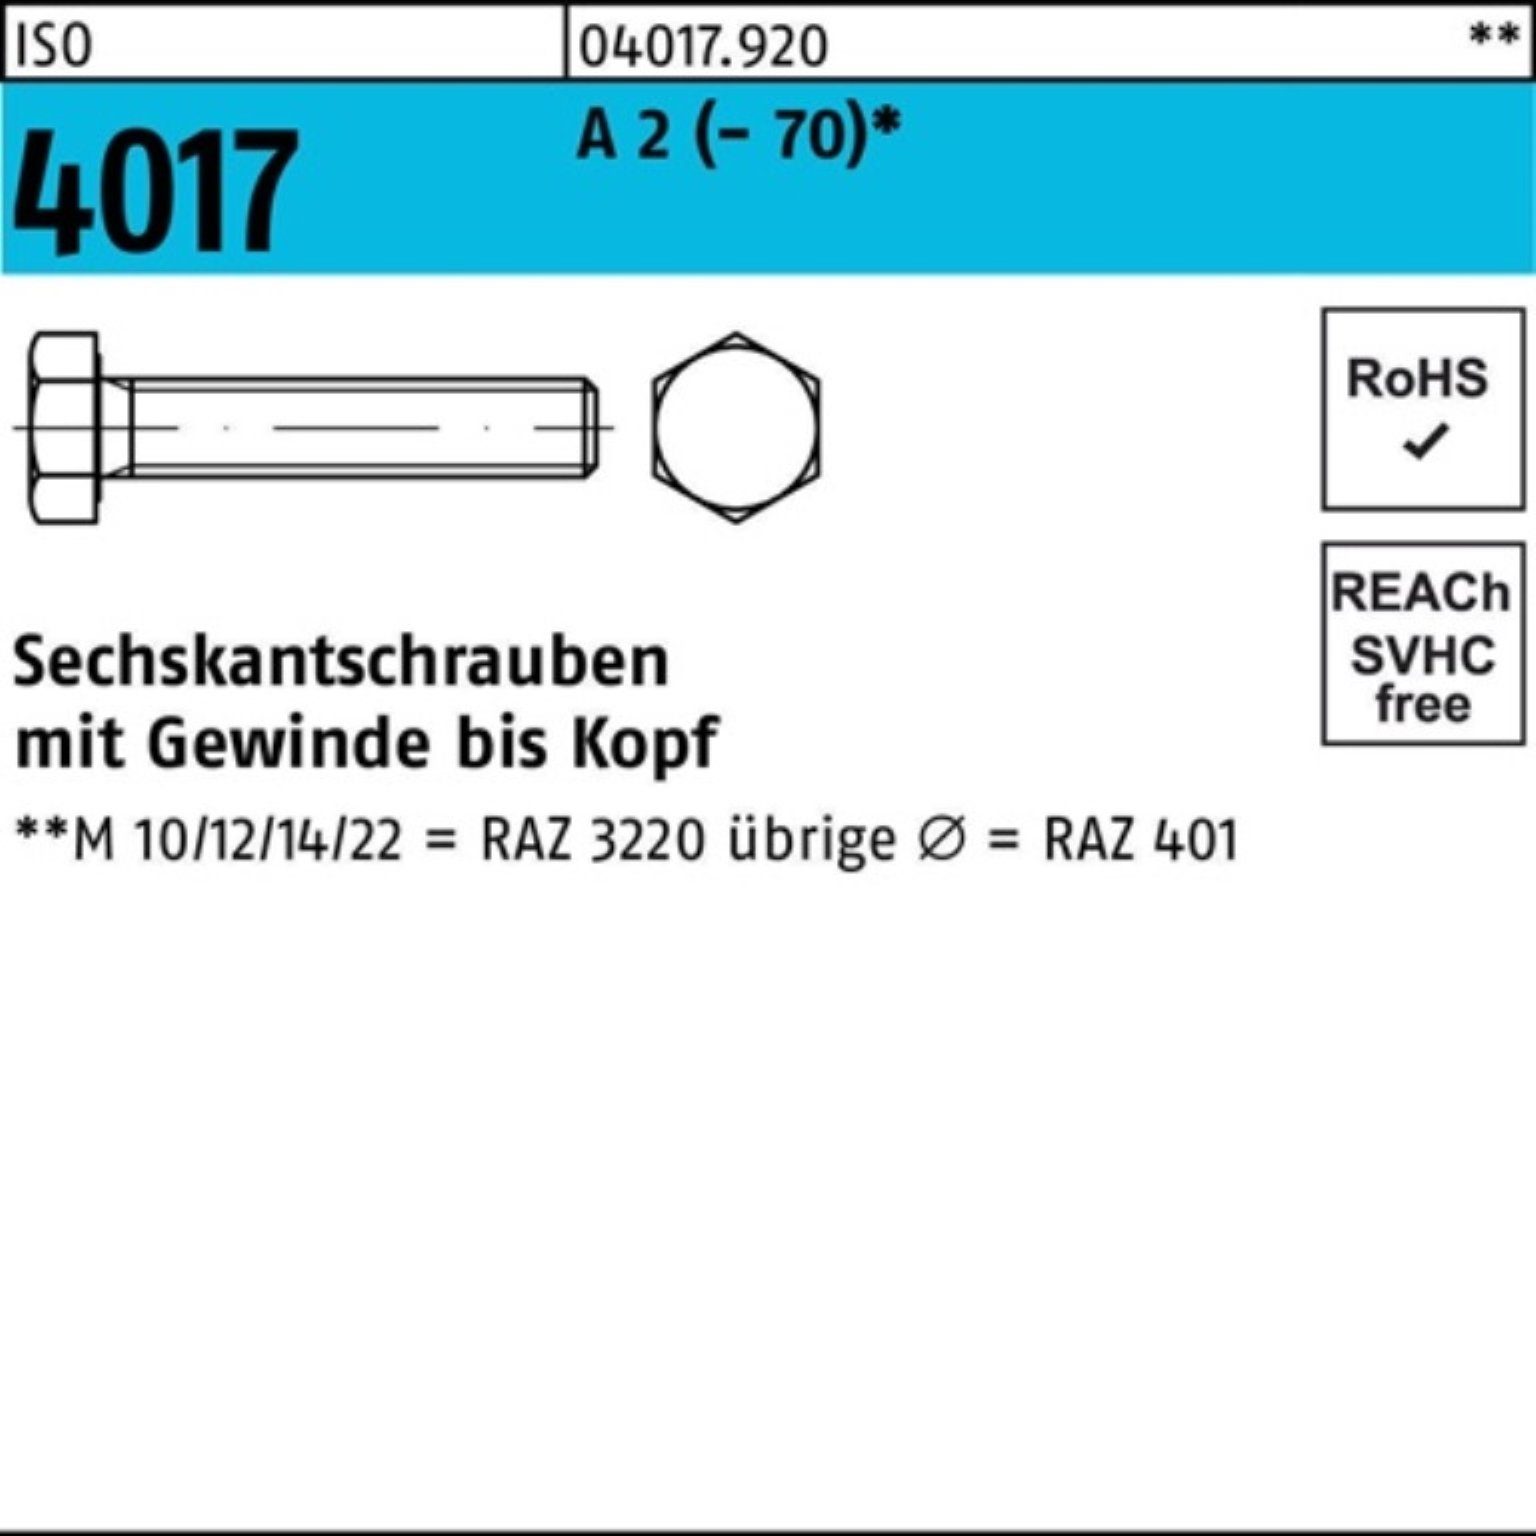 4017 18 VG Sechskantschraube ISO Bufab 100er 2 M10x A Stück (70) 100 Pack Sechskantschraube